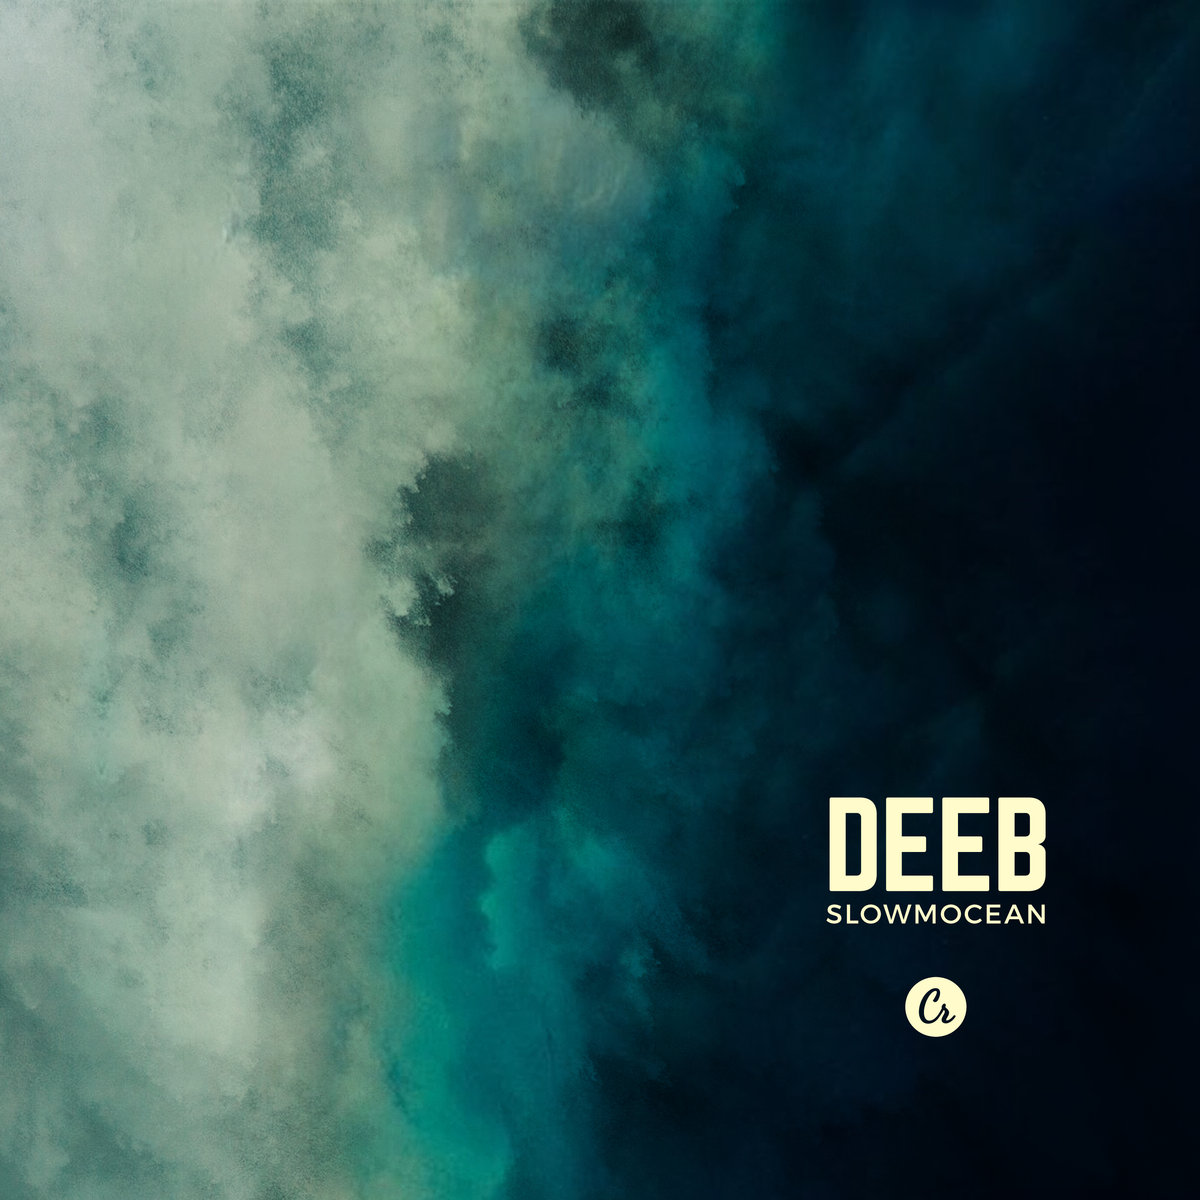 Get deeB’s Slowmocean on Vinyl